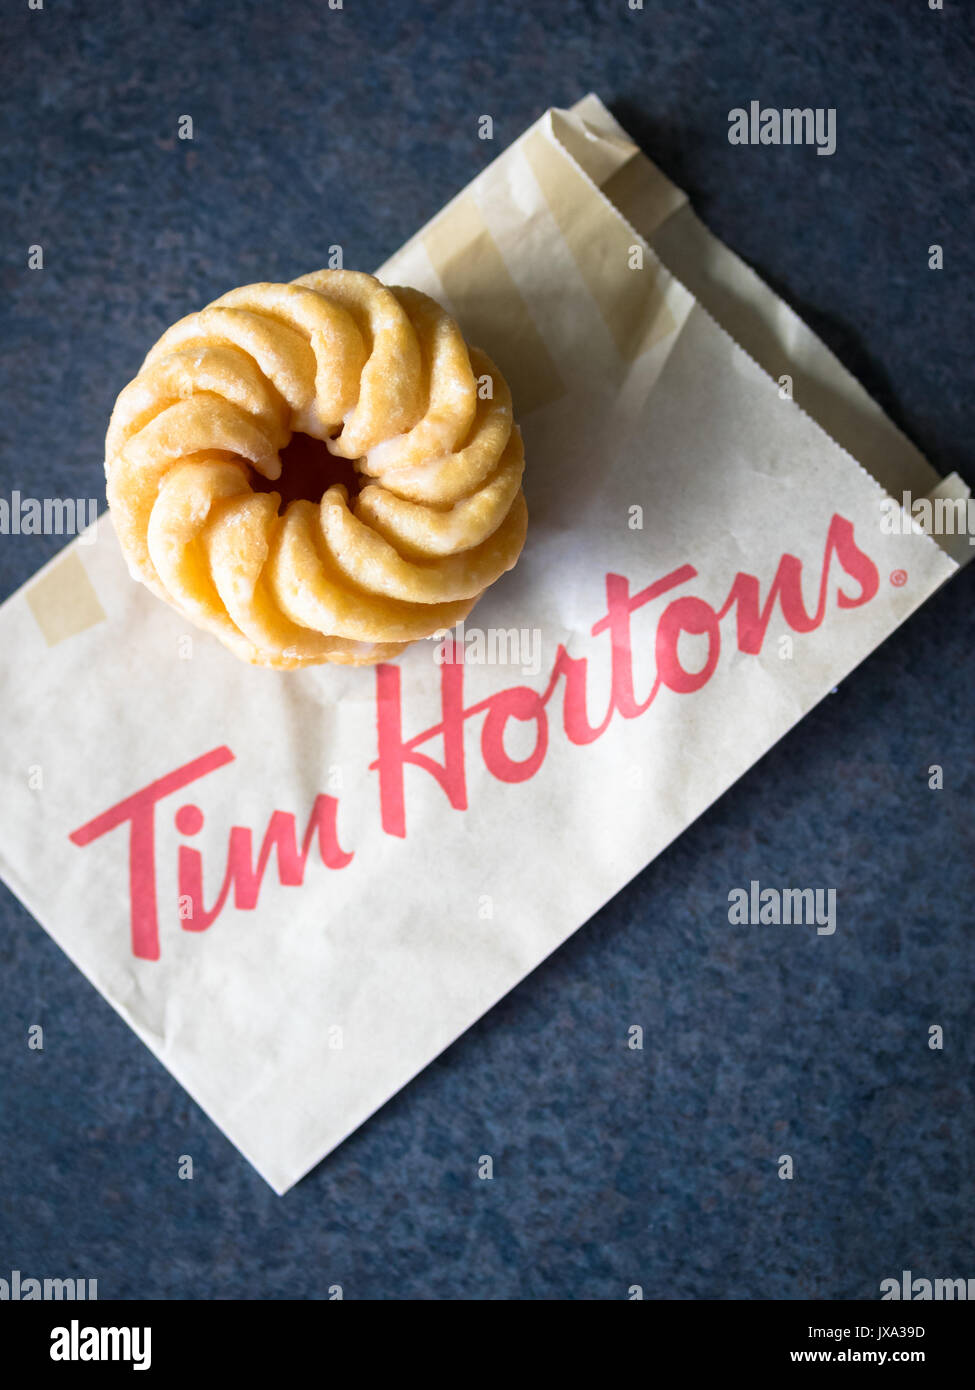 Ein Honig cruller Donut von Tim Hortons, einem beliebten Kanadischen fast food Restaurant und Donut Shop. Stockfoto